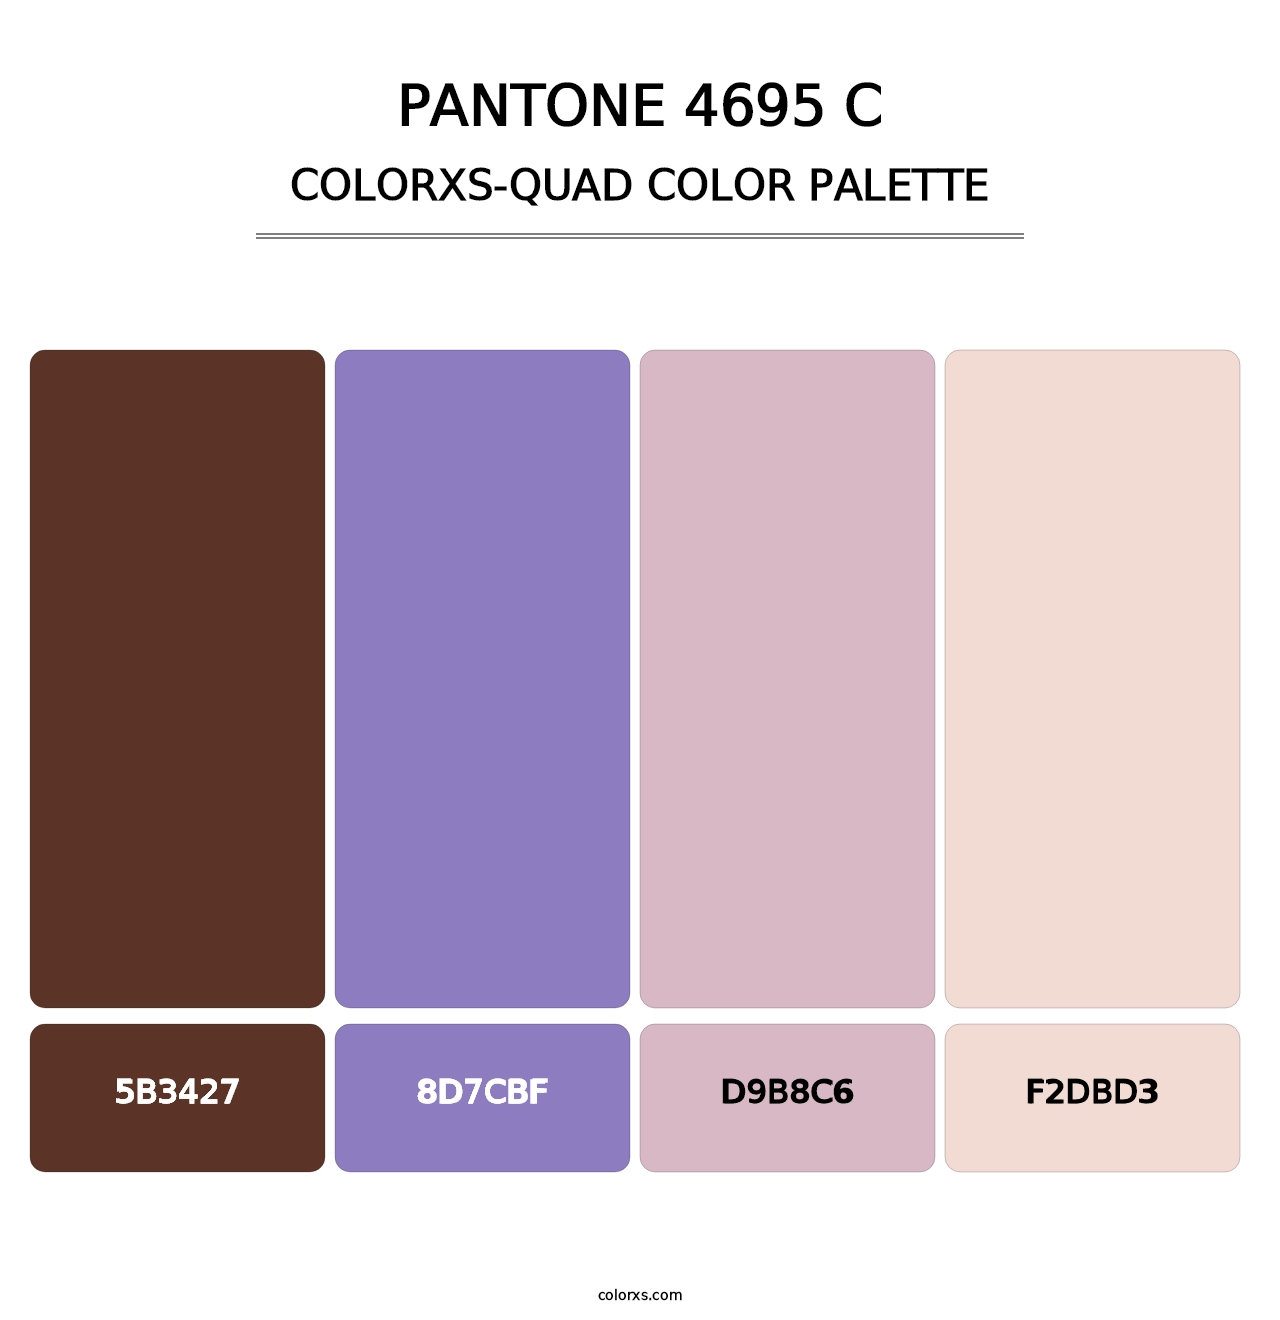 PANTONE 4695 C - Colorxs Quad Palette